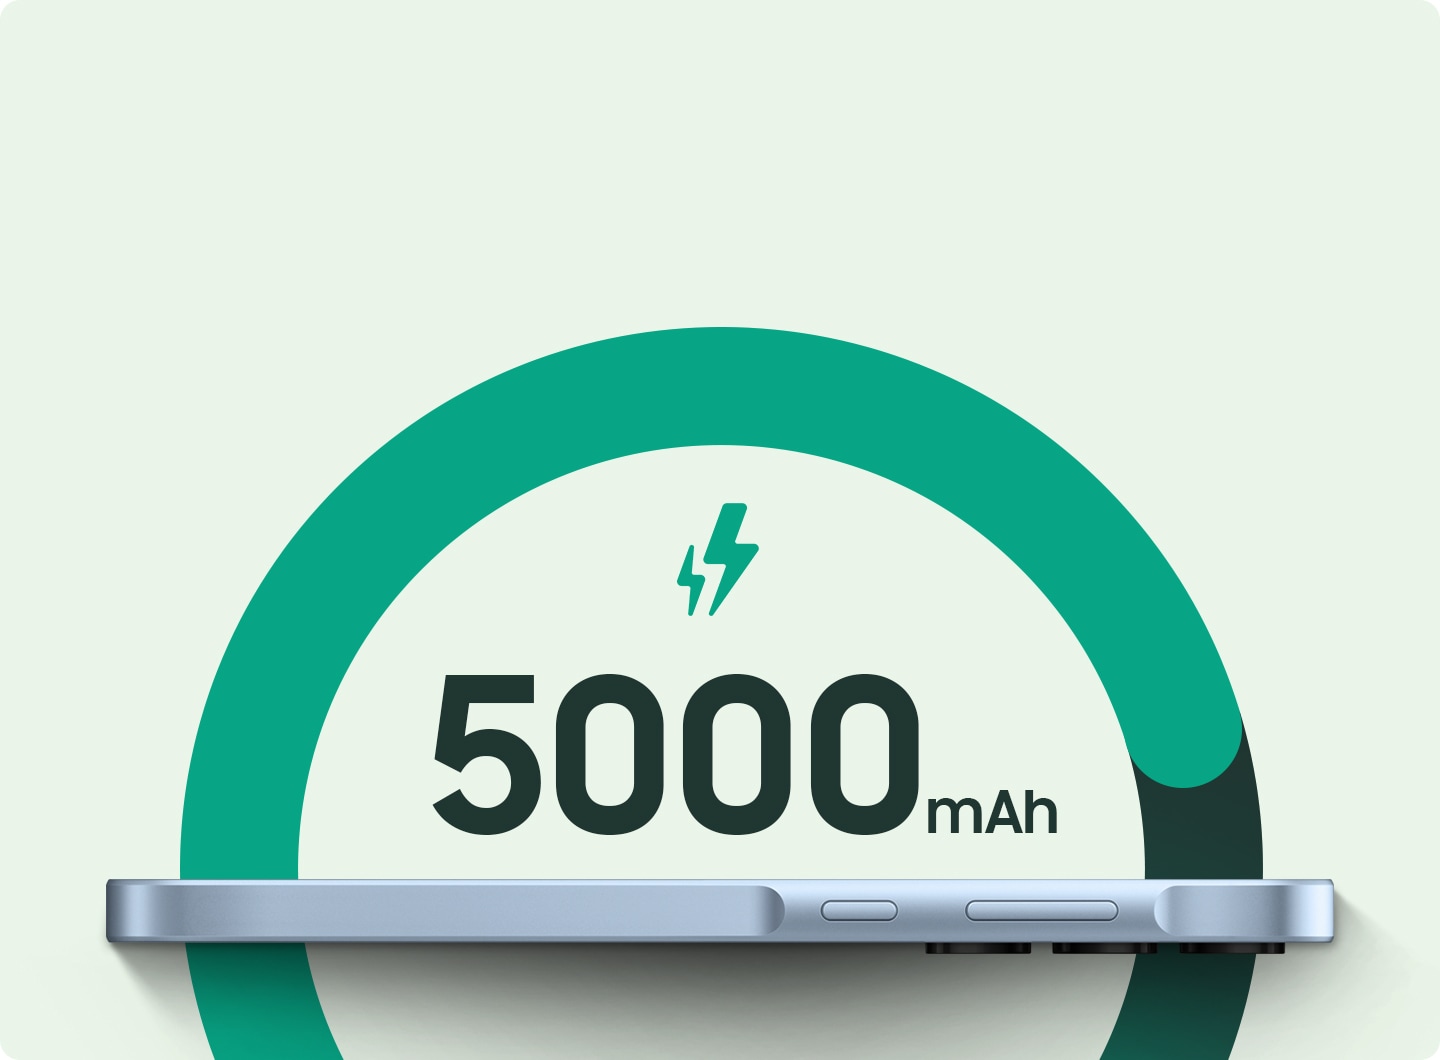 Profil latéral d'un smartphone posé à plat, avec affichage numérique « 5 000 mAh » et une icône en forme d'éclair projetée au-dessus, symbolisant la capacité de la batterie du téléphone.